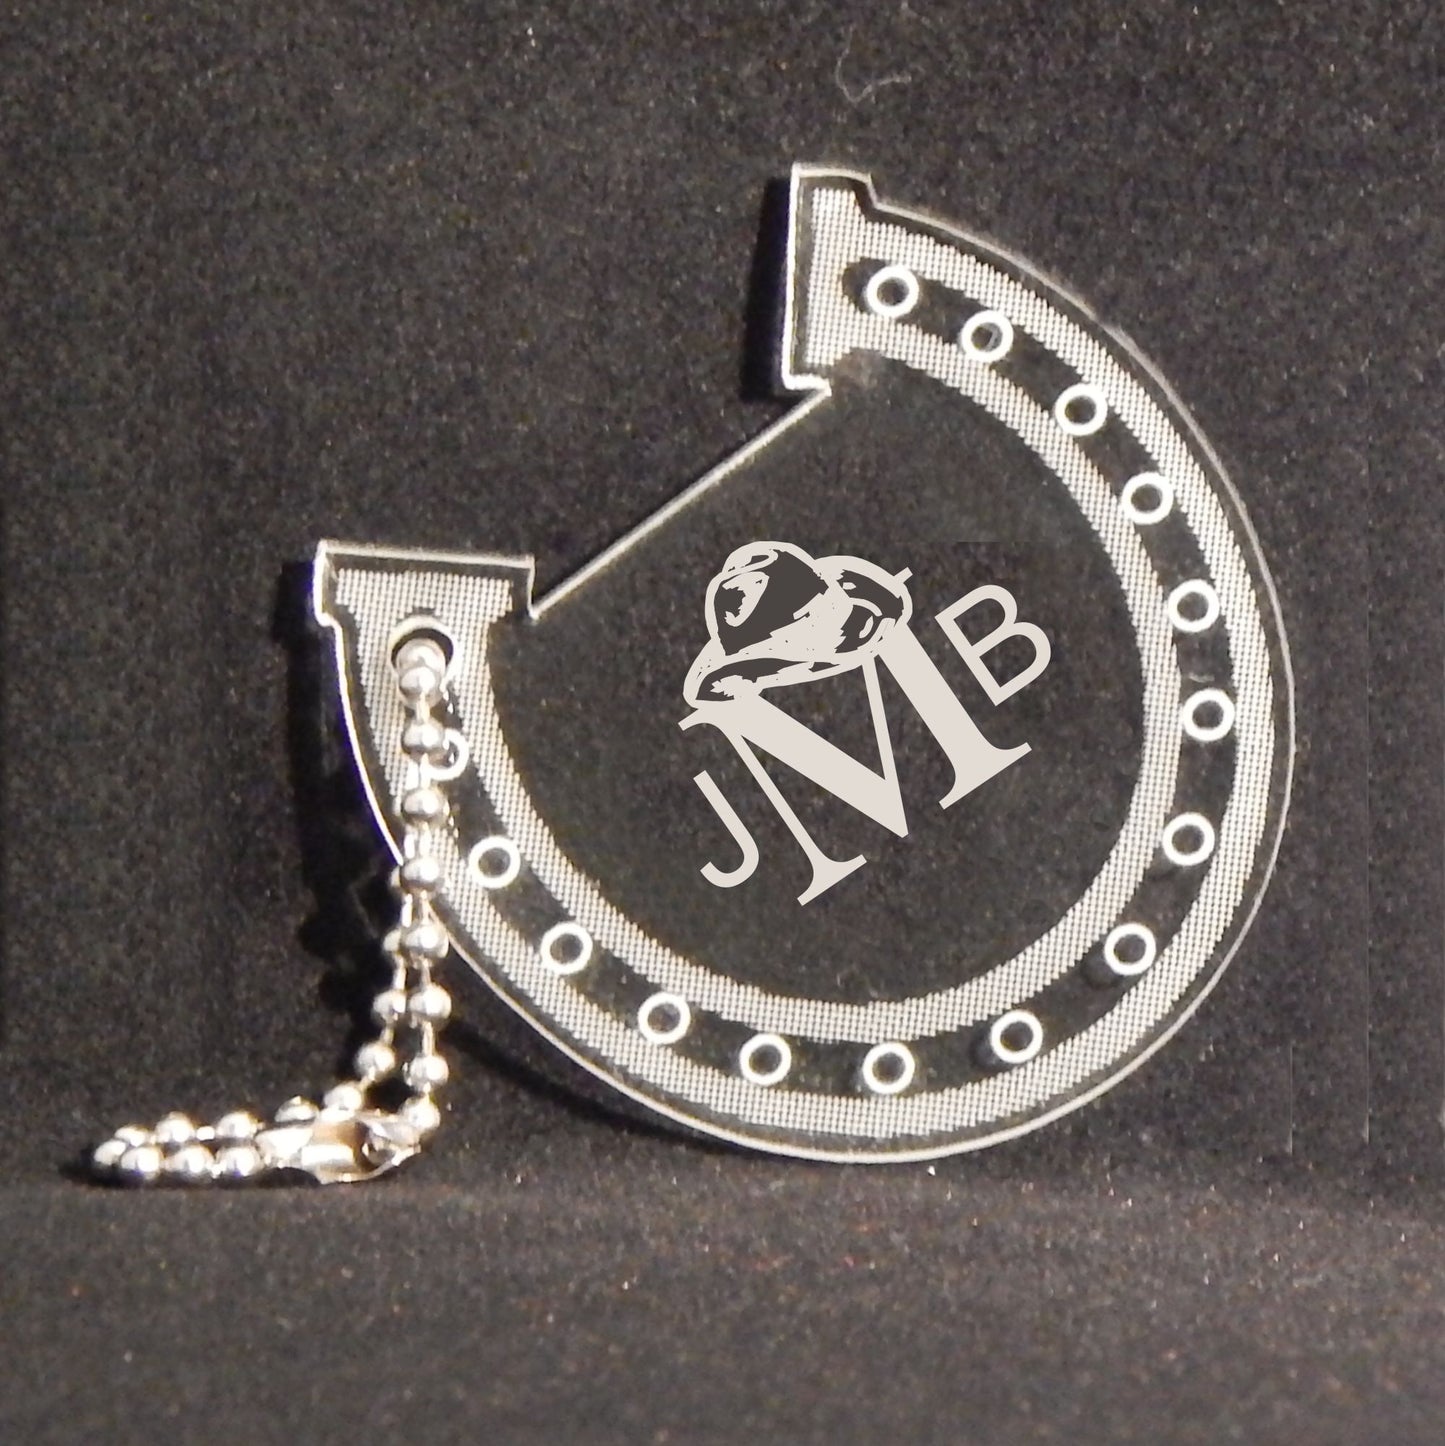 horseshoe shaped acrylic keychain designed with a horseshoe design and engraved with monogram